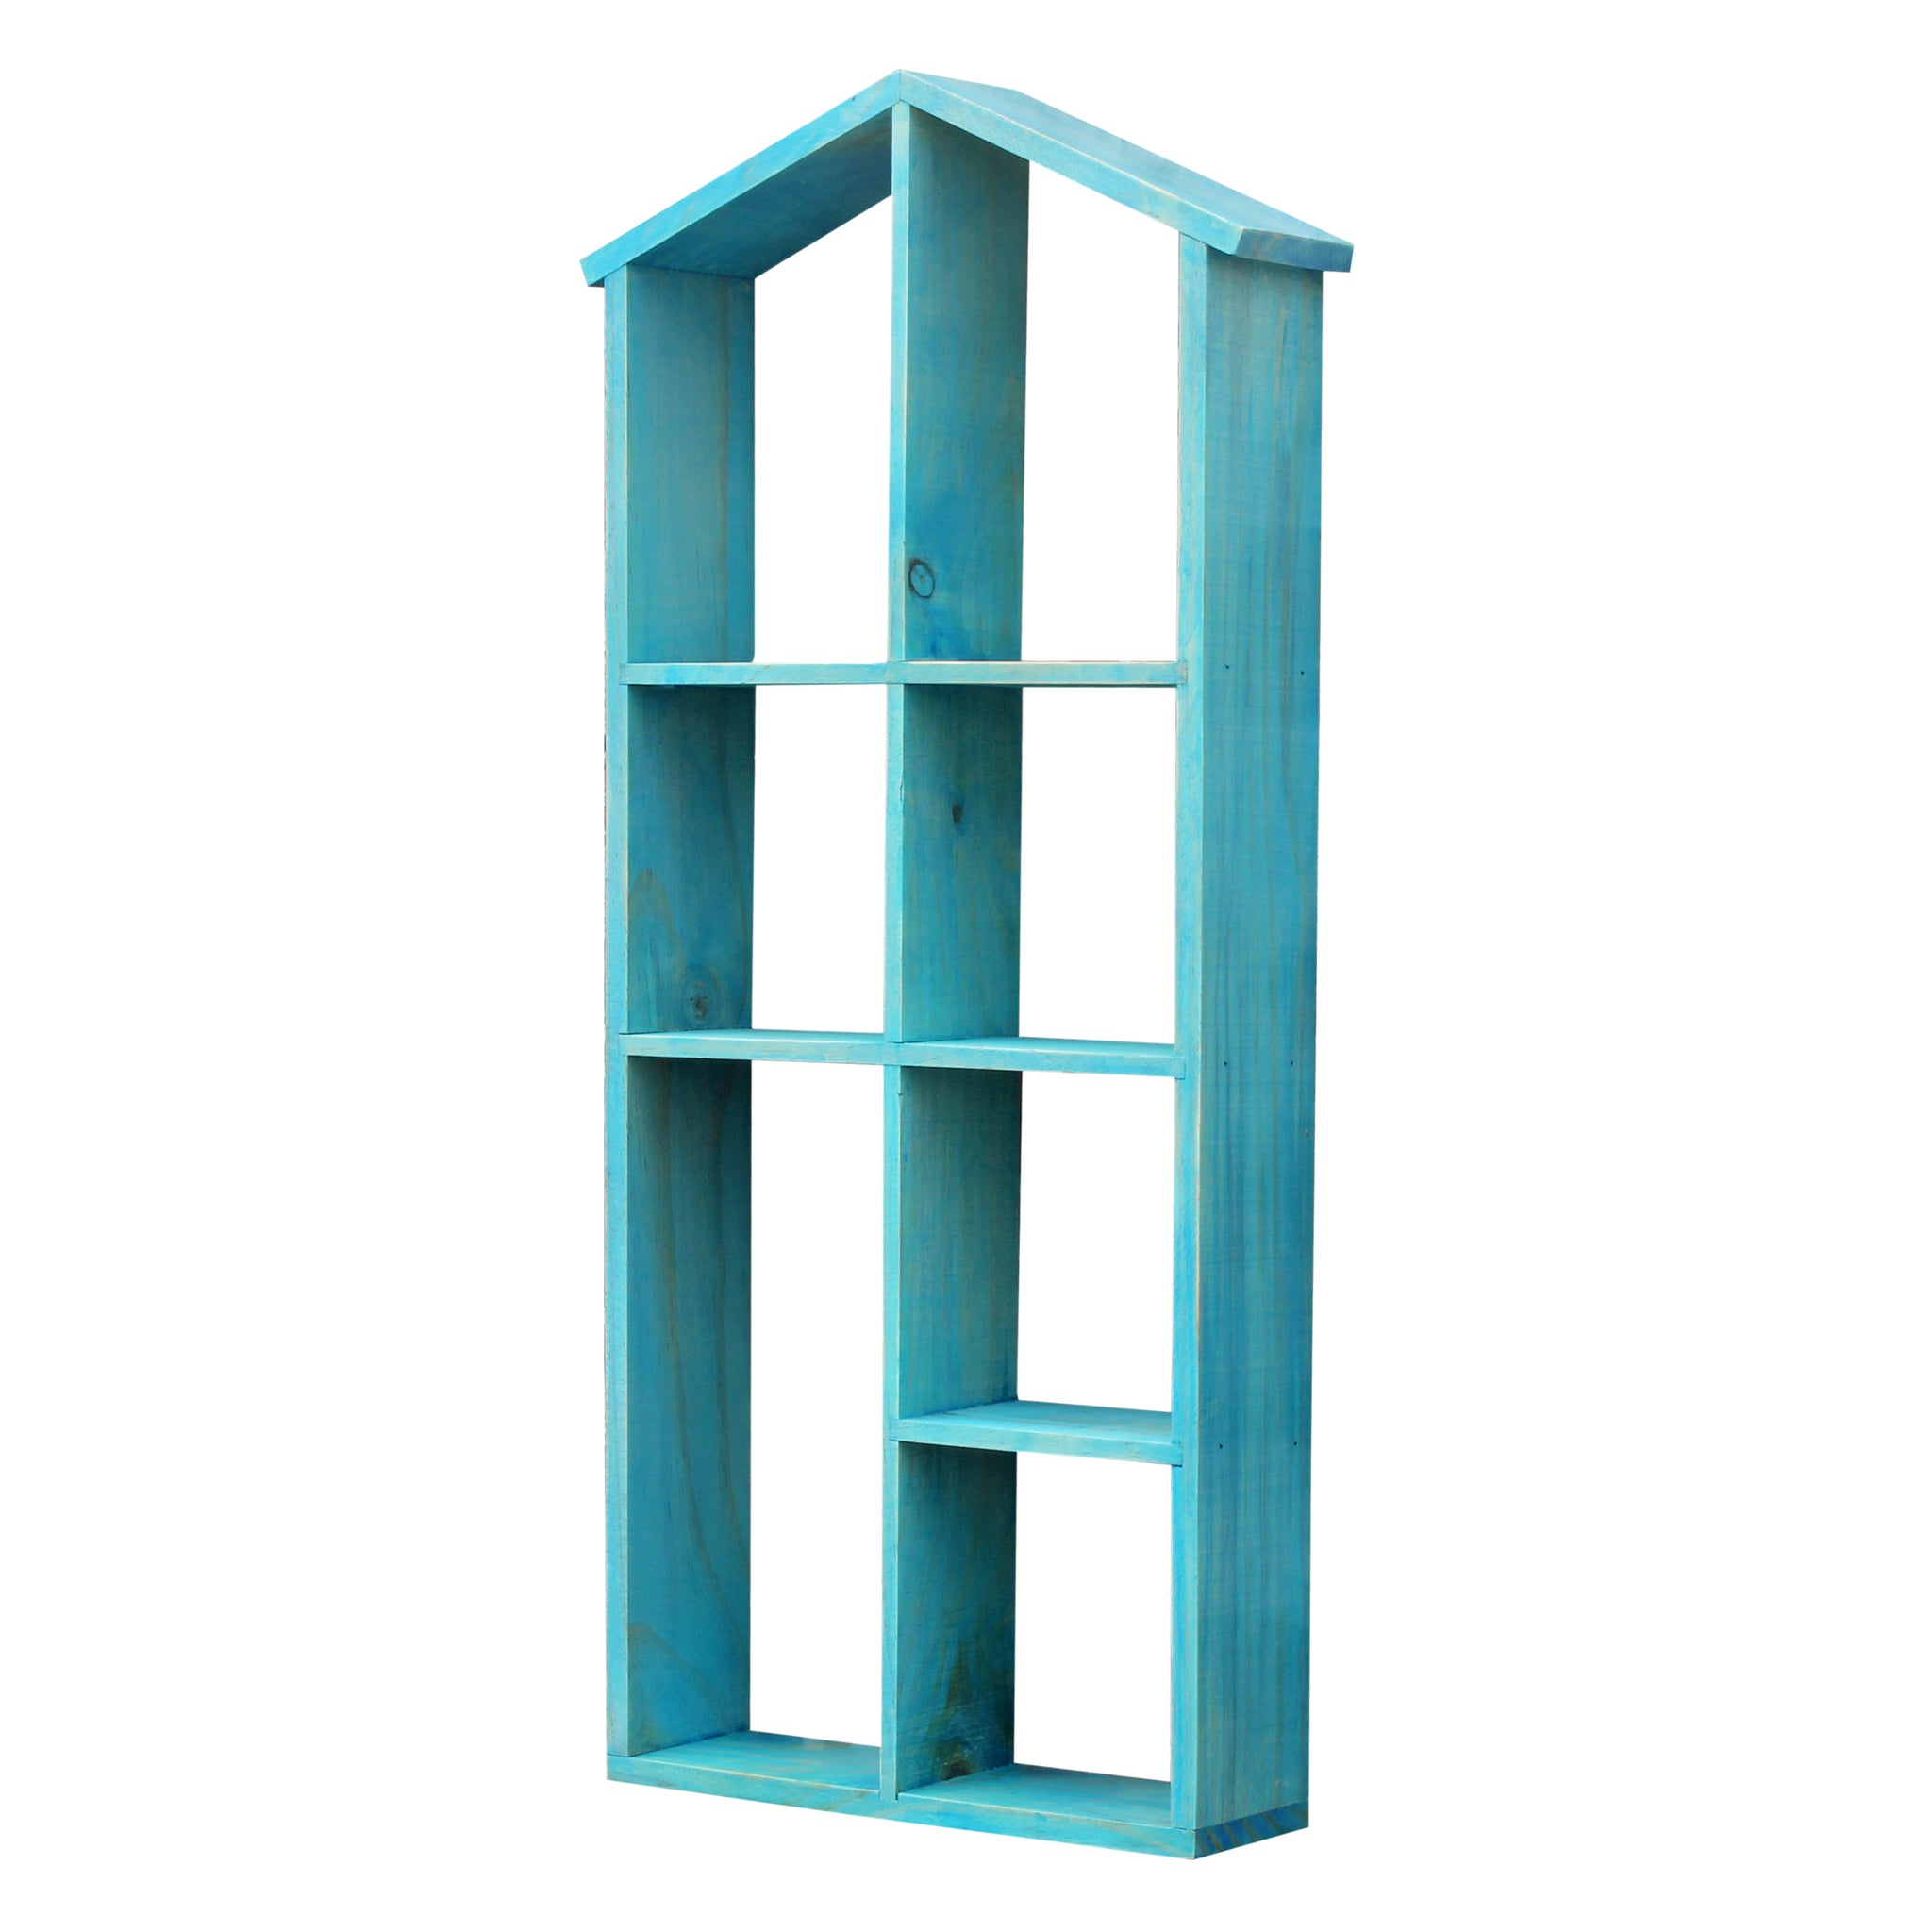 House Shaped Vintage Wood Pigeonhole Wall Shelf - Blue